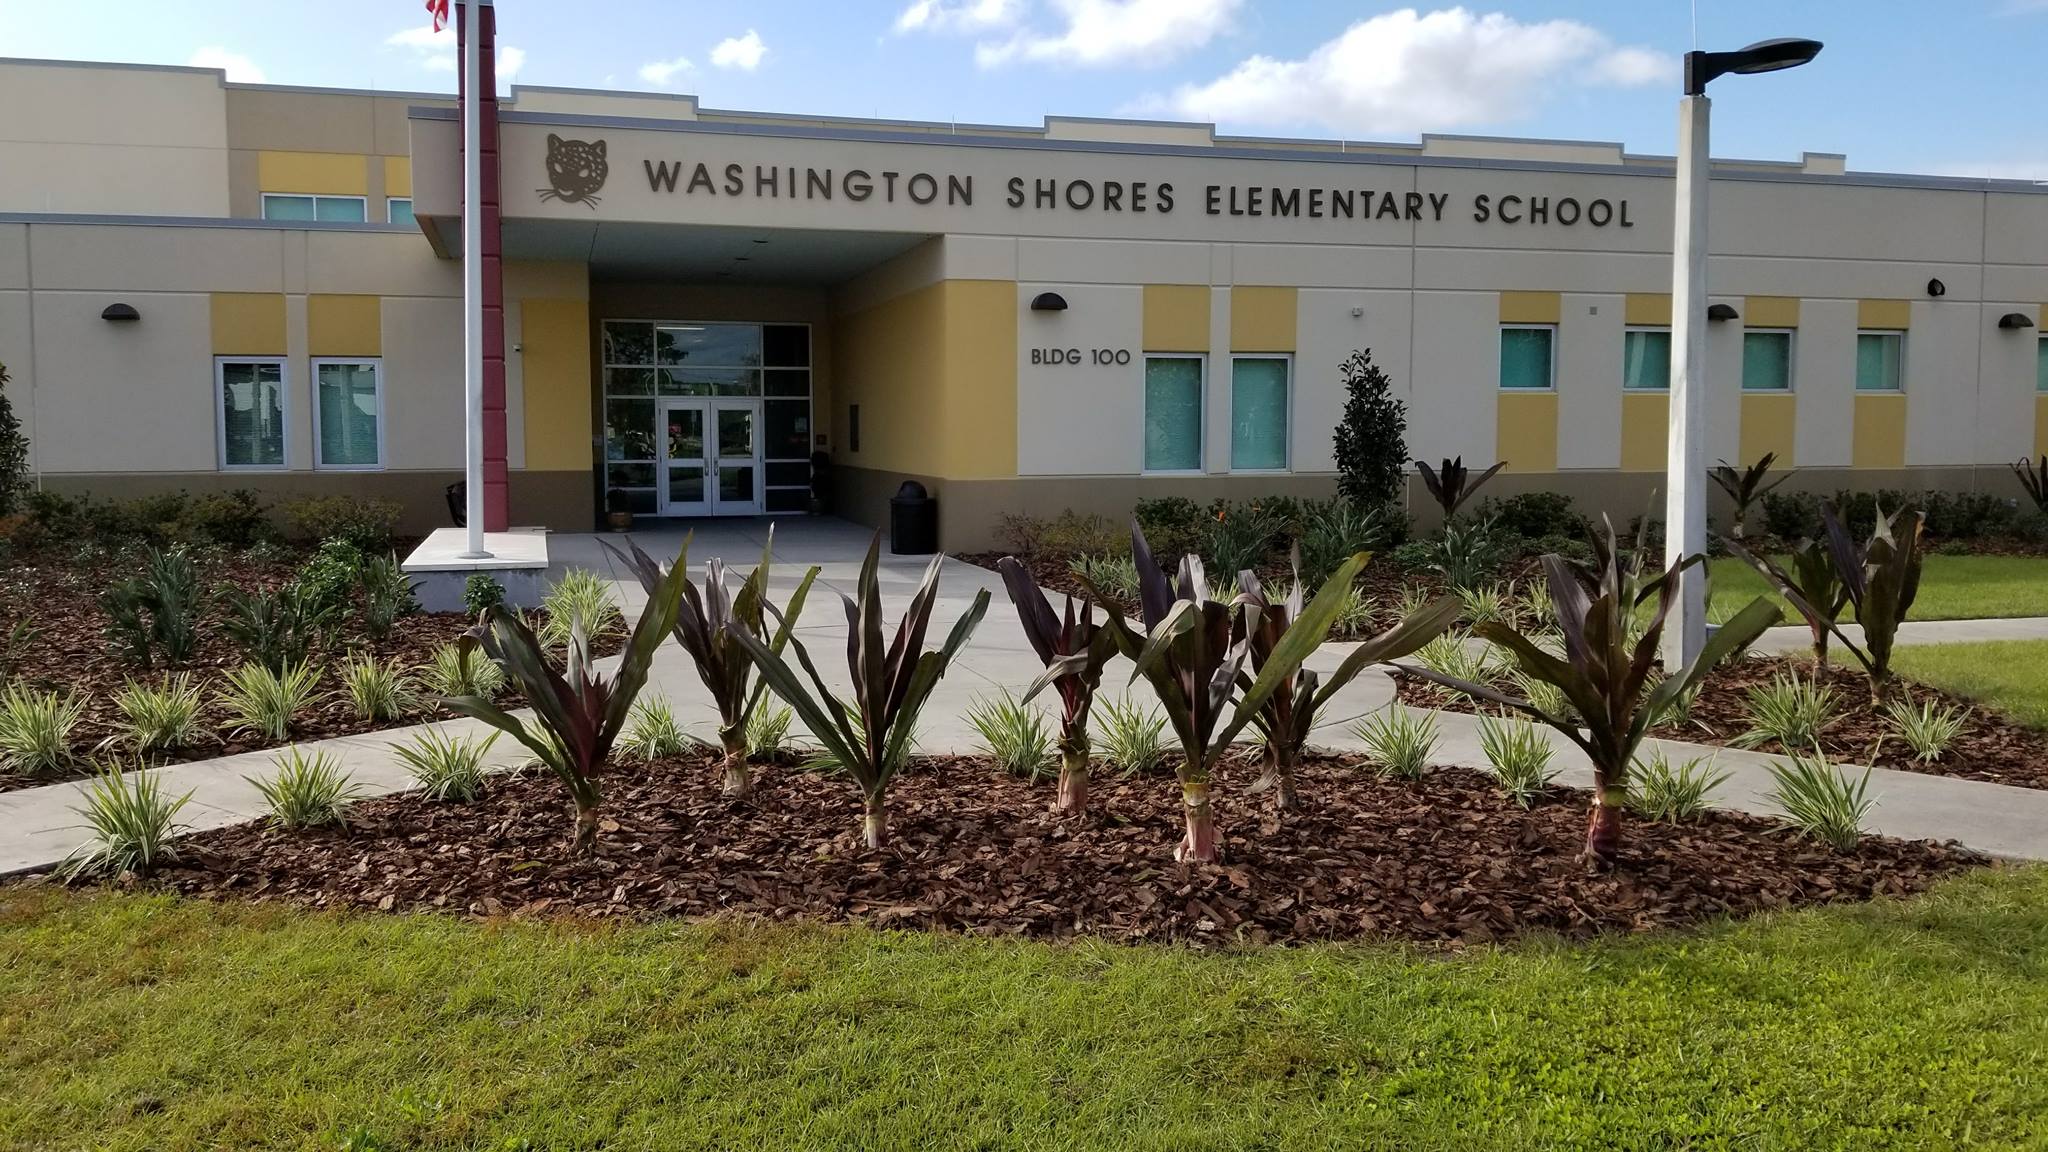 Washington Shores Elementary